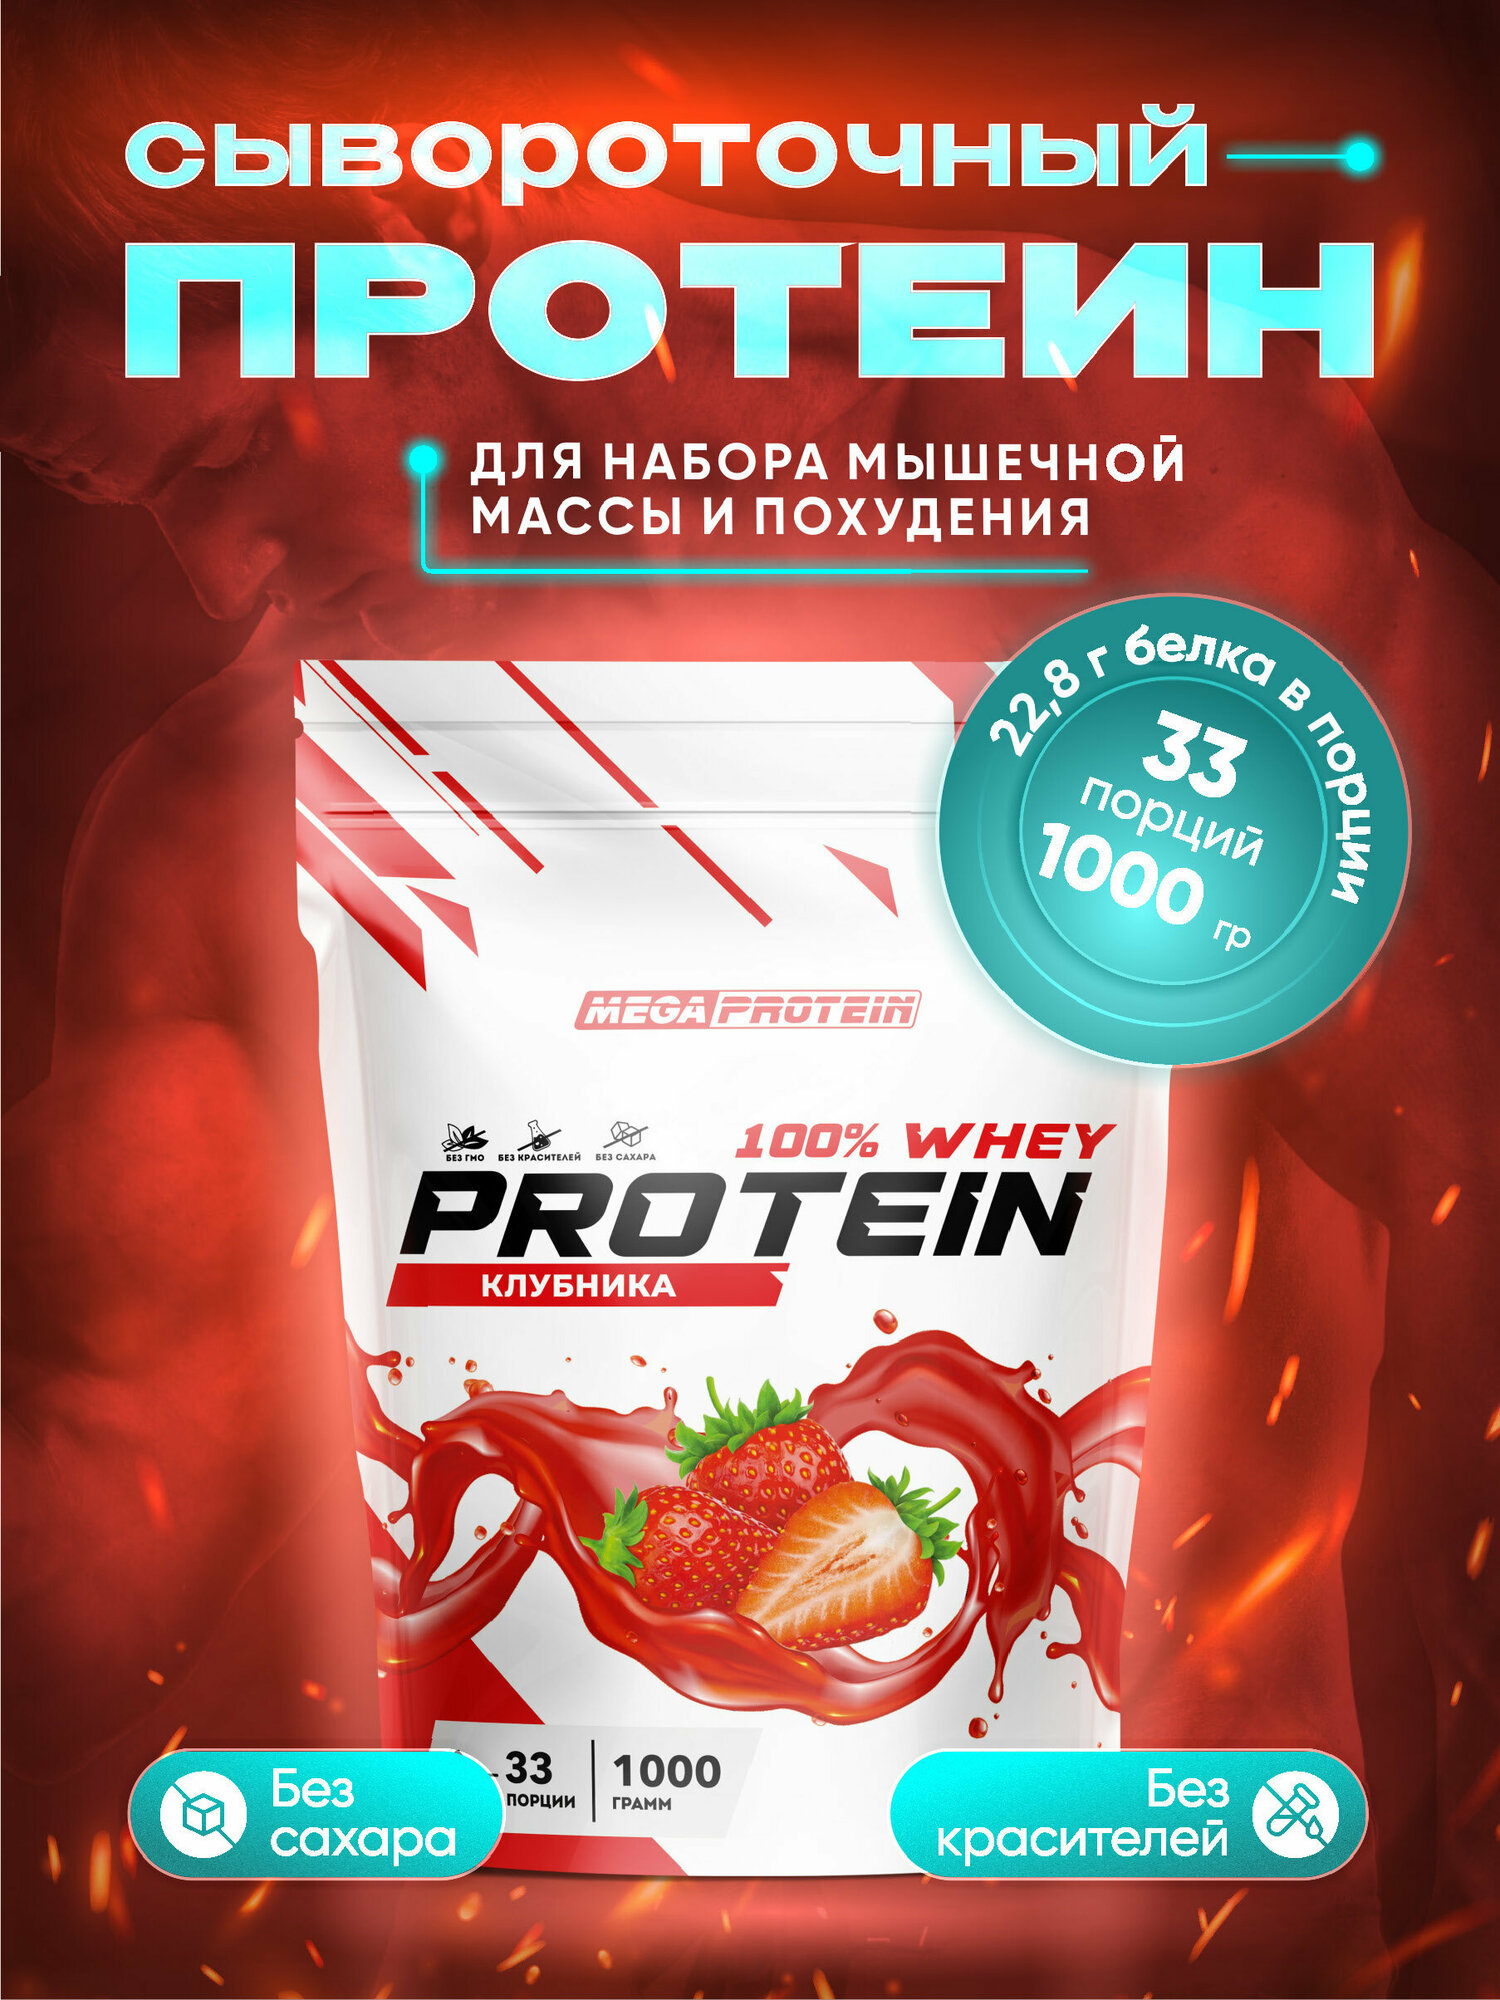 Сывороточный протеин / Протеиновый коктейль для набора мышечной массы и похудения со вкусом "Клубника"